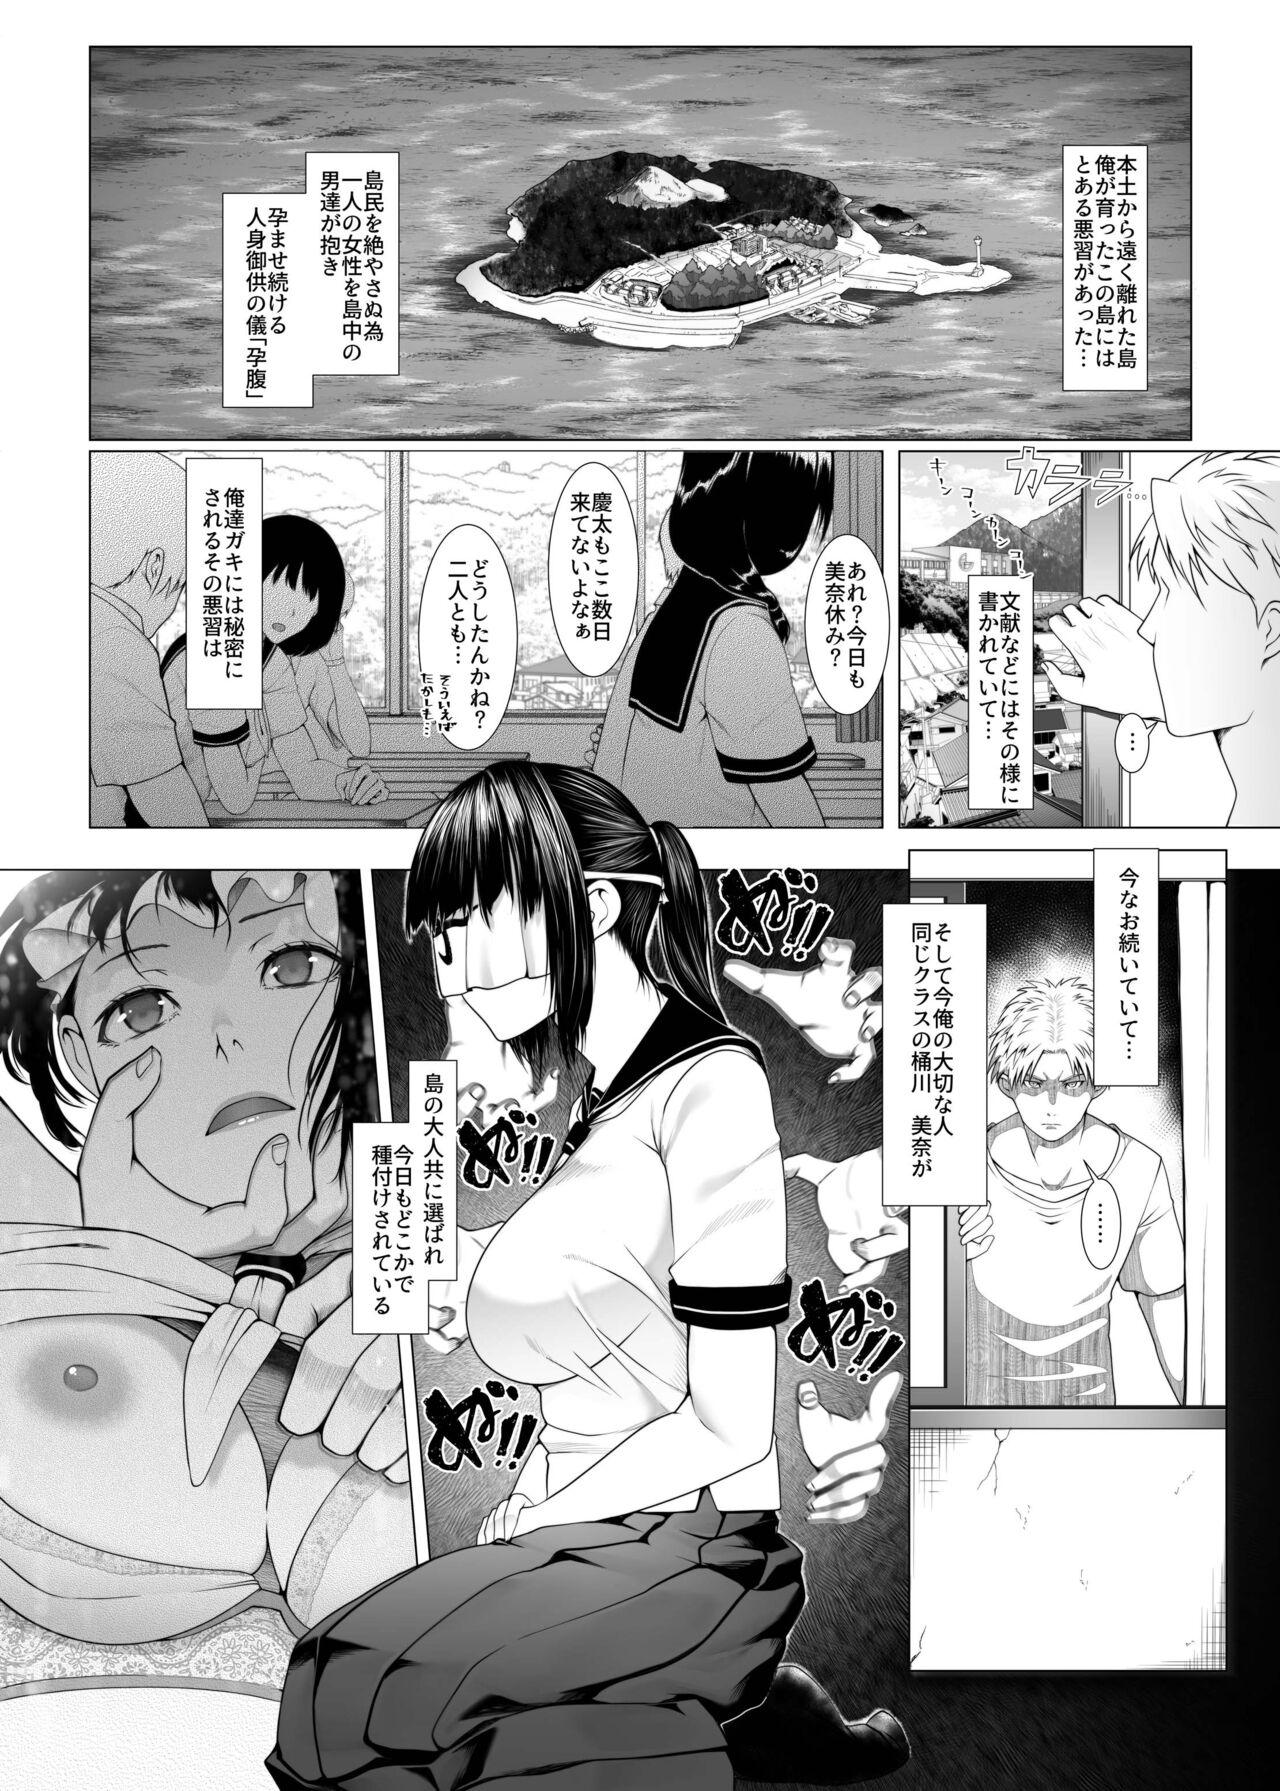 Virginity Haramase no Shima 4 - Original Oral Sex - Page 2